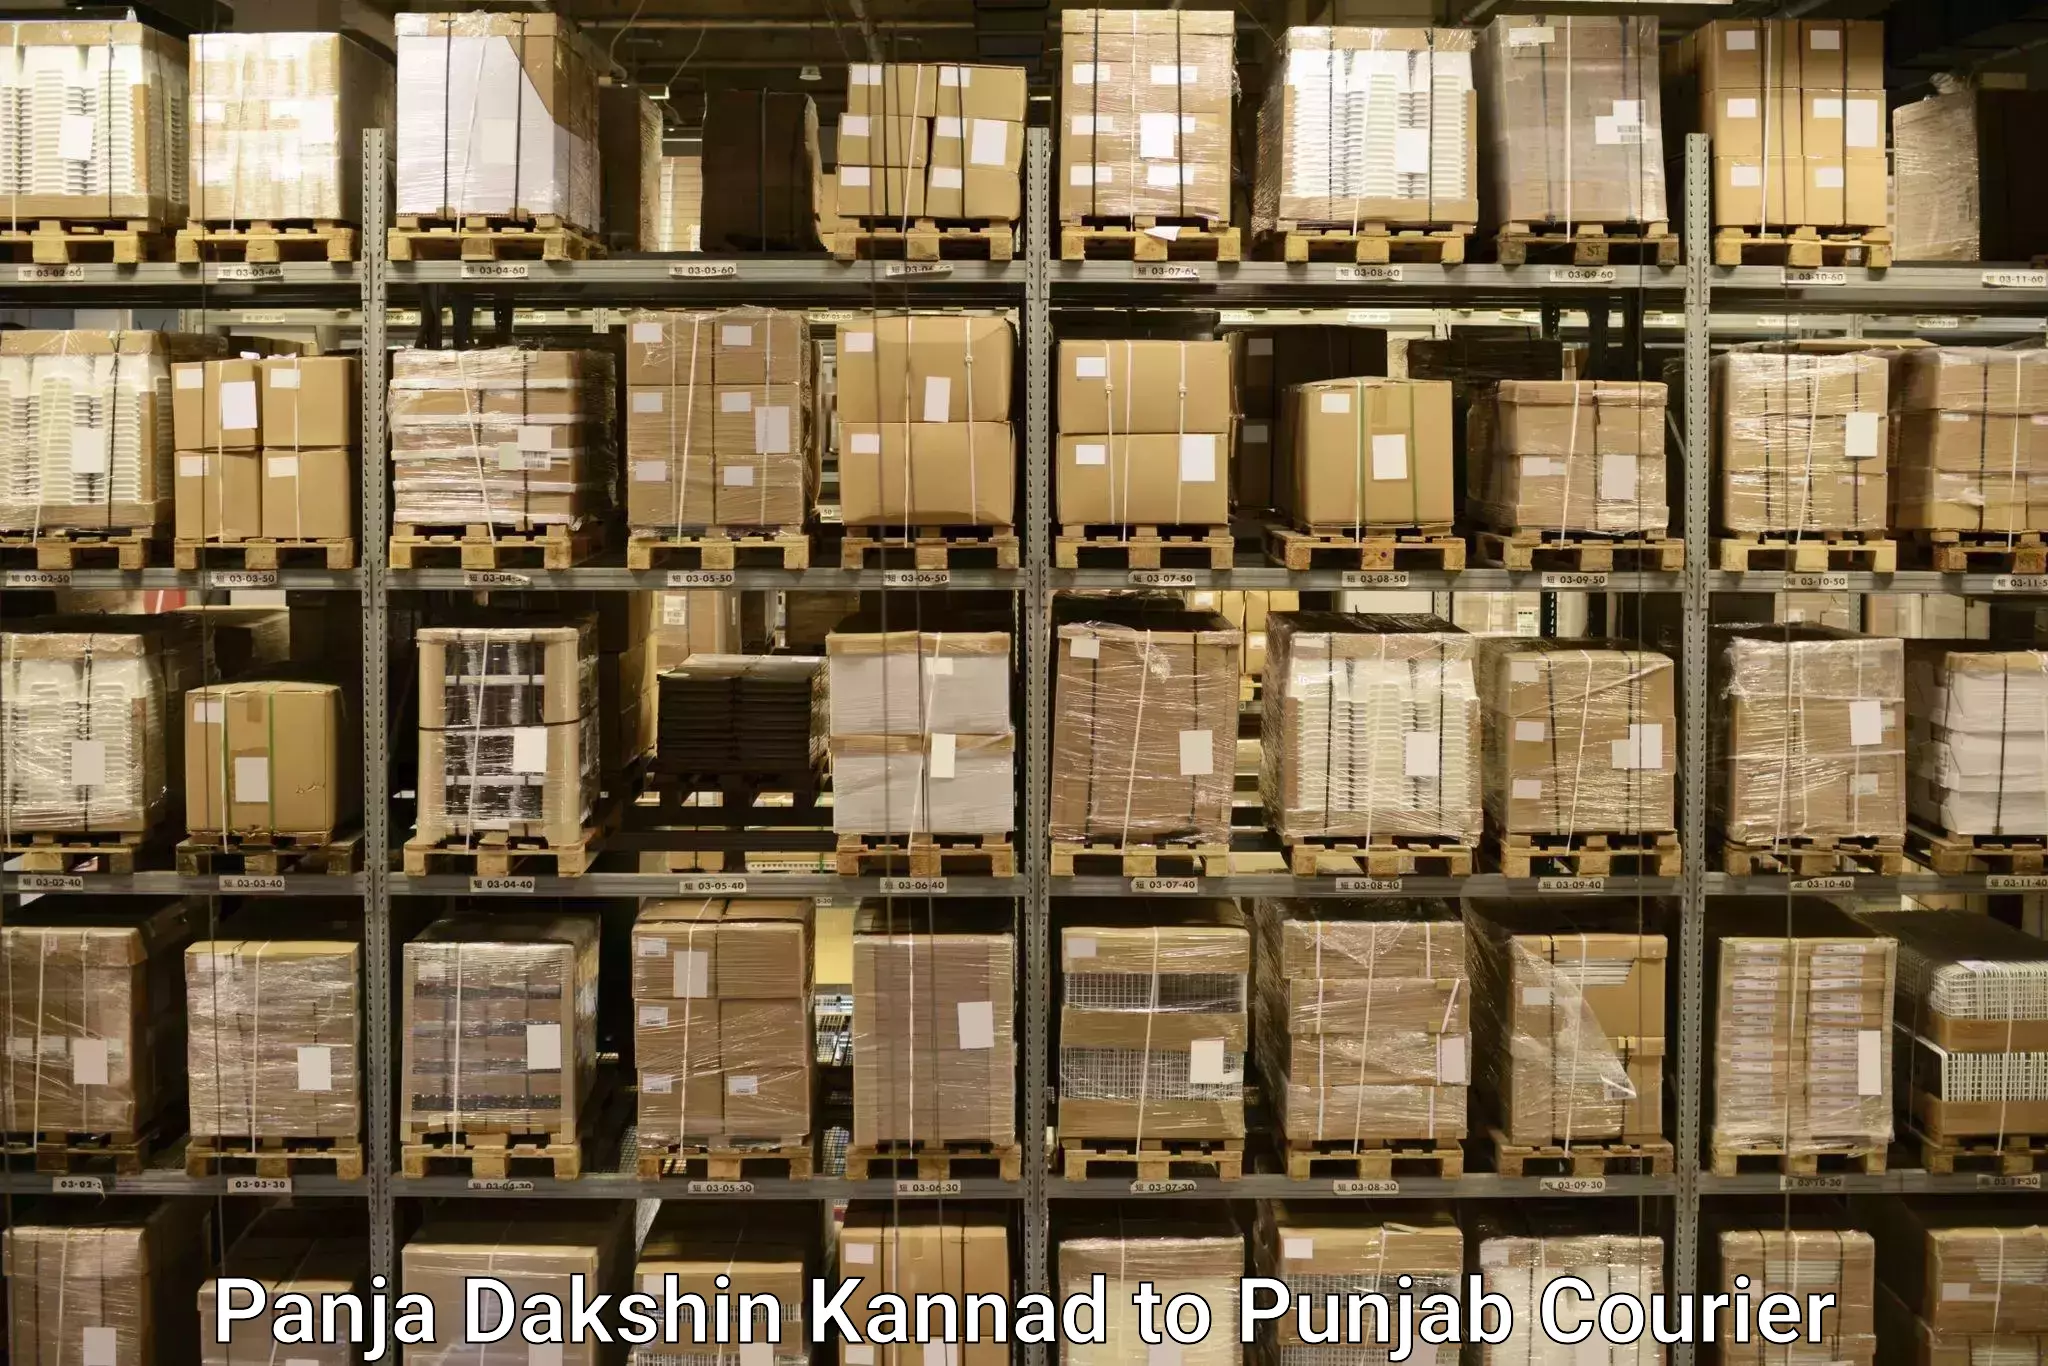 Hassle-free luggage shipping Panja Dakshin Kannad to Punjab